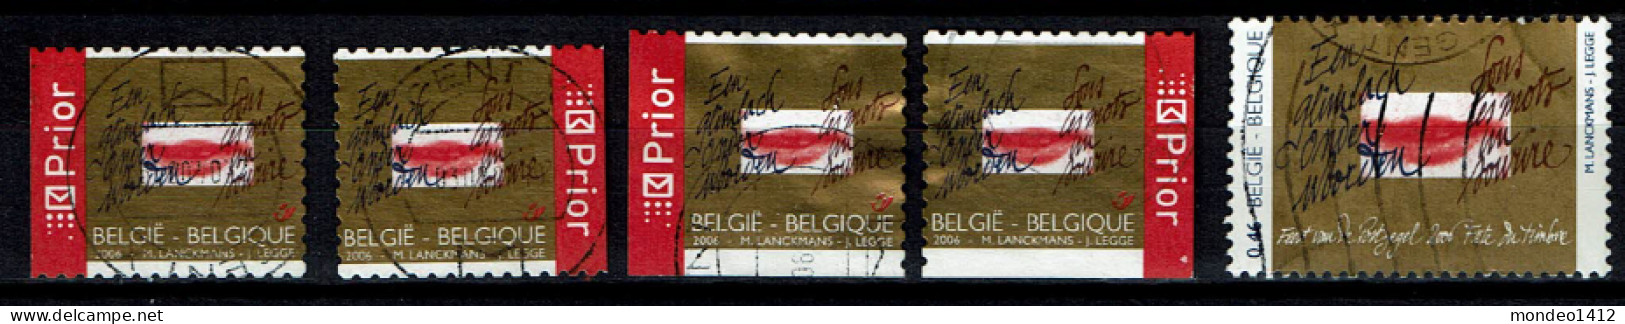 België OBP 3498/3499 - Day Of The Stamp - Oblitérés